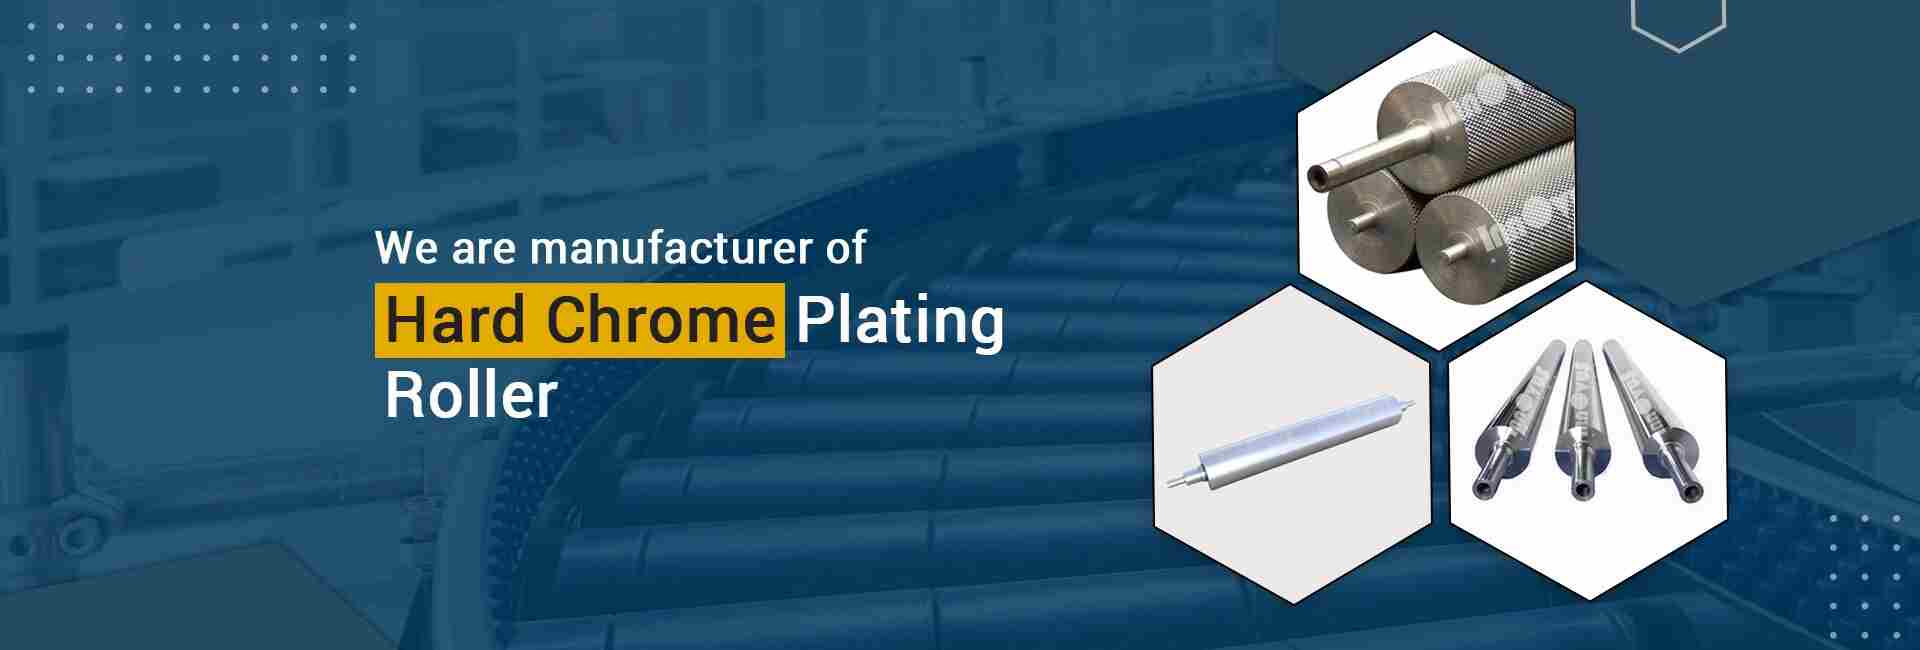 Hard Chrome Plating Roller Manufacturer